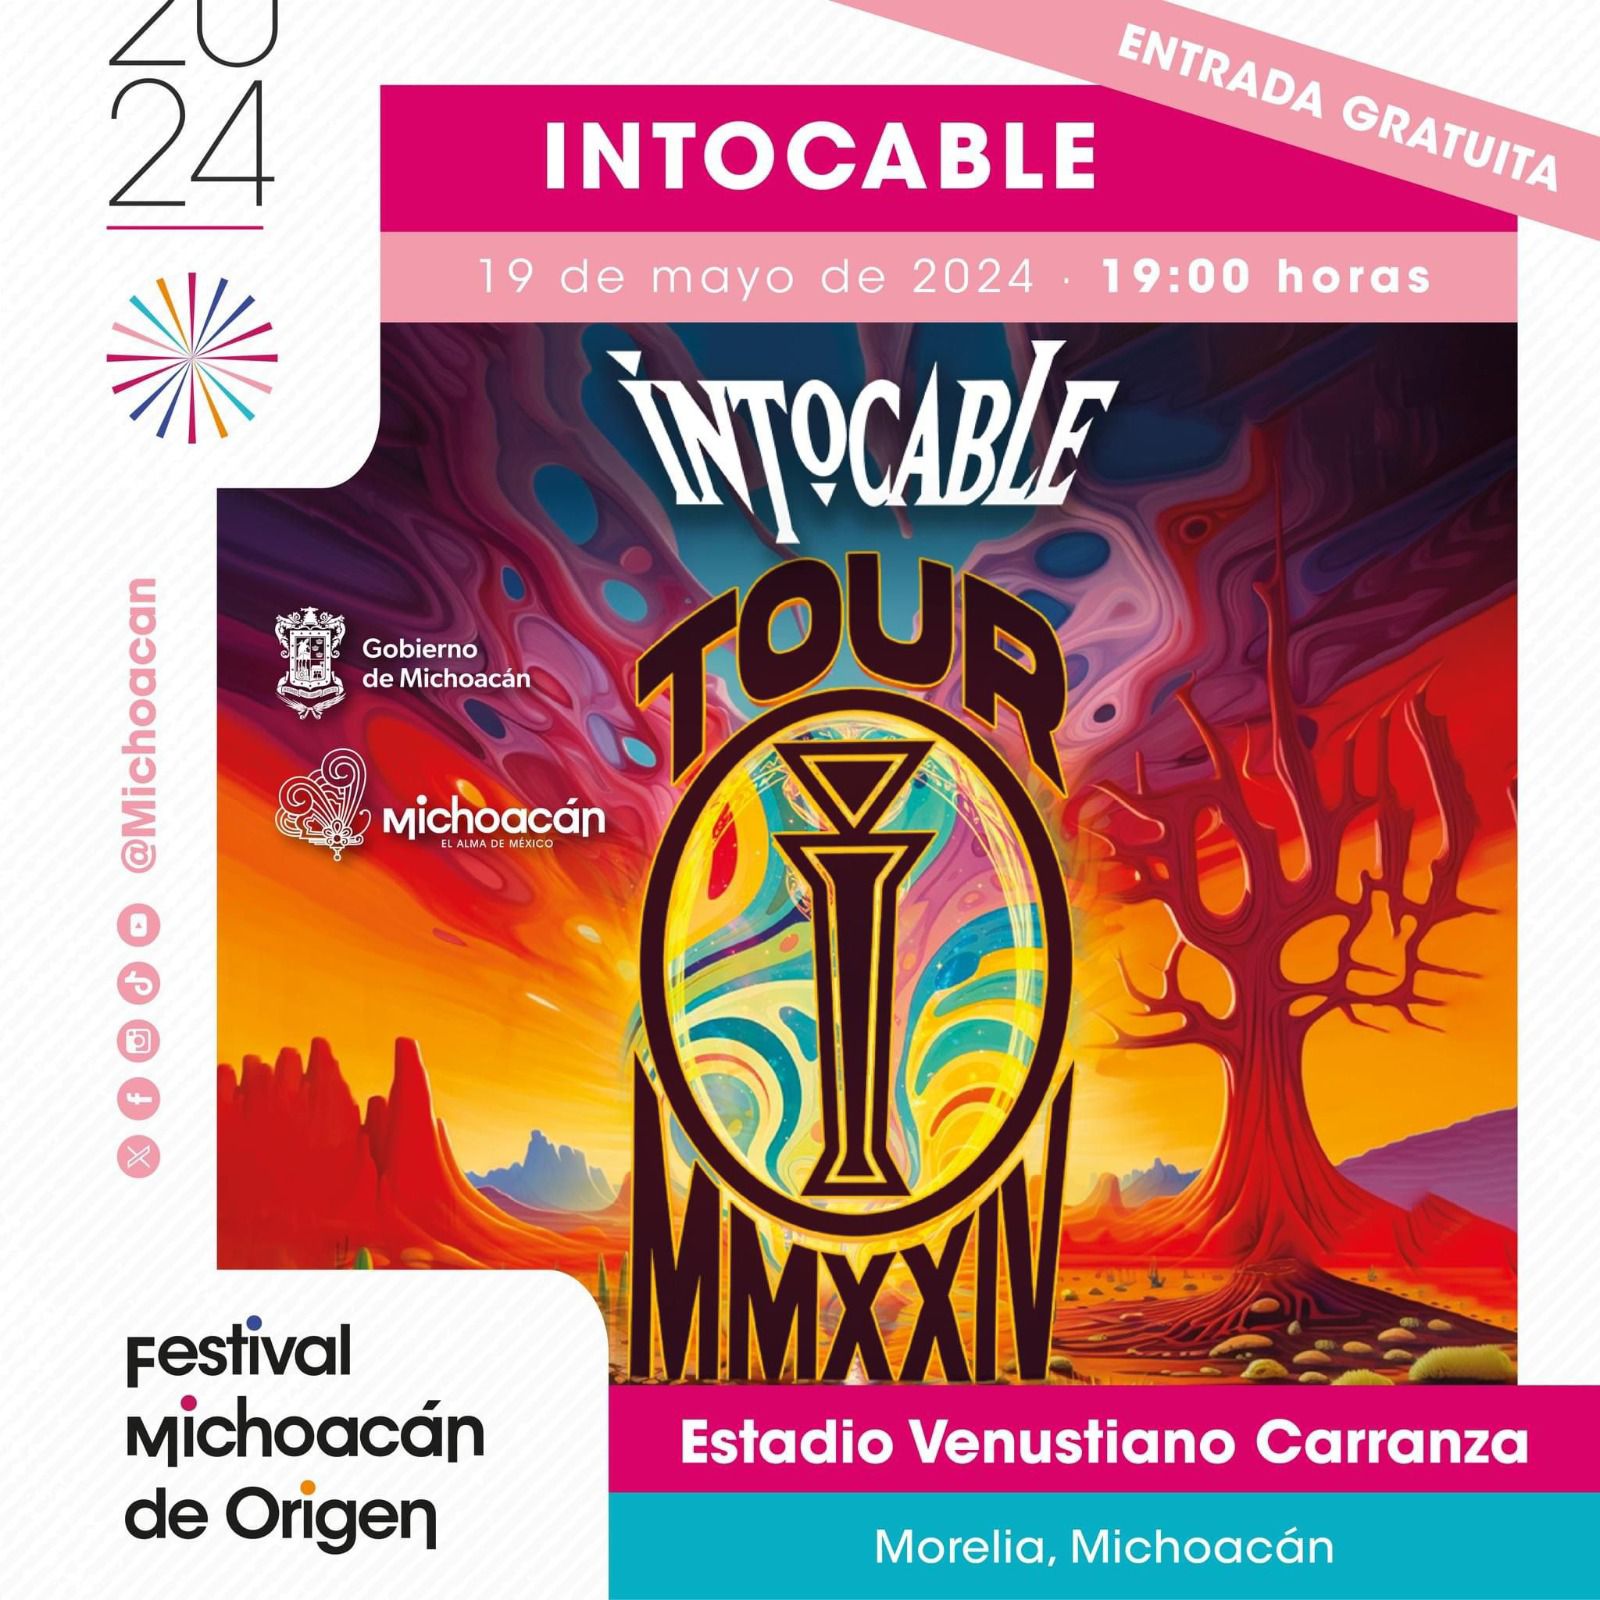 Hoy gran concierto de Intocable en el Estadio Venustiano Carranza